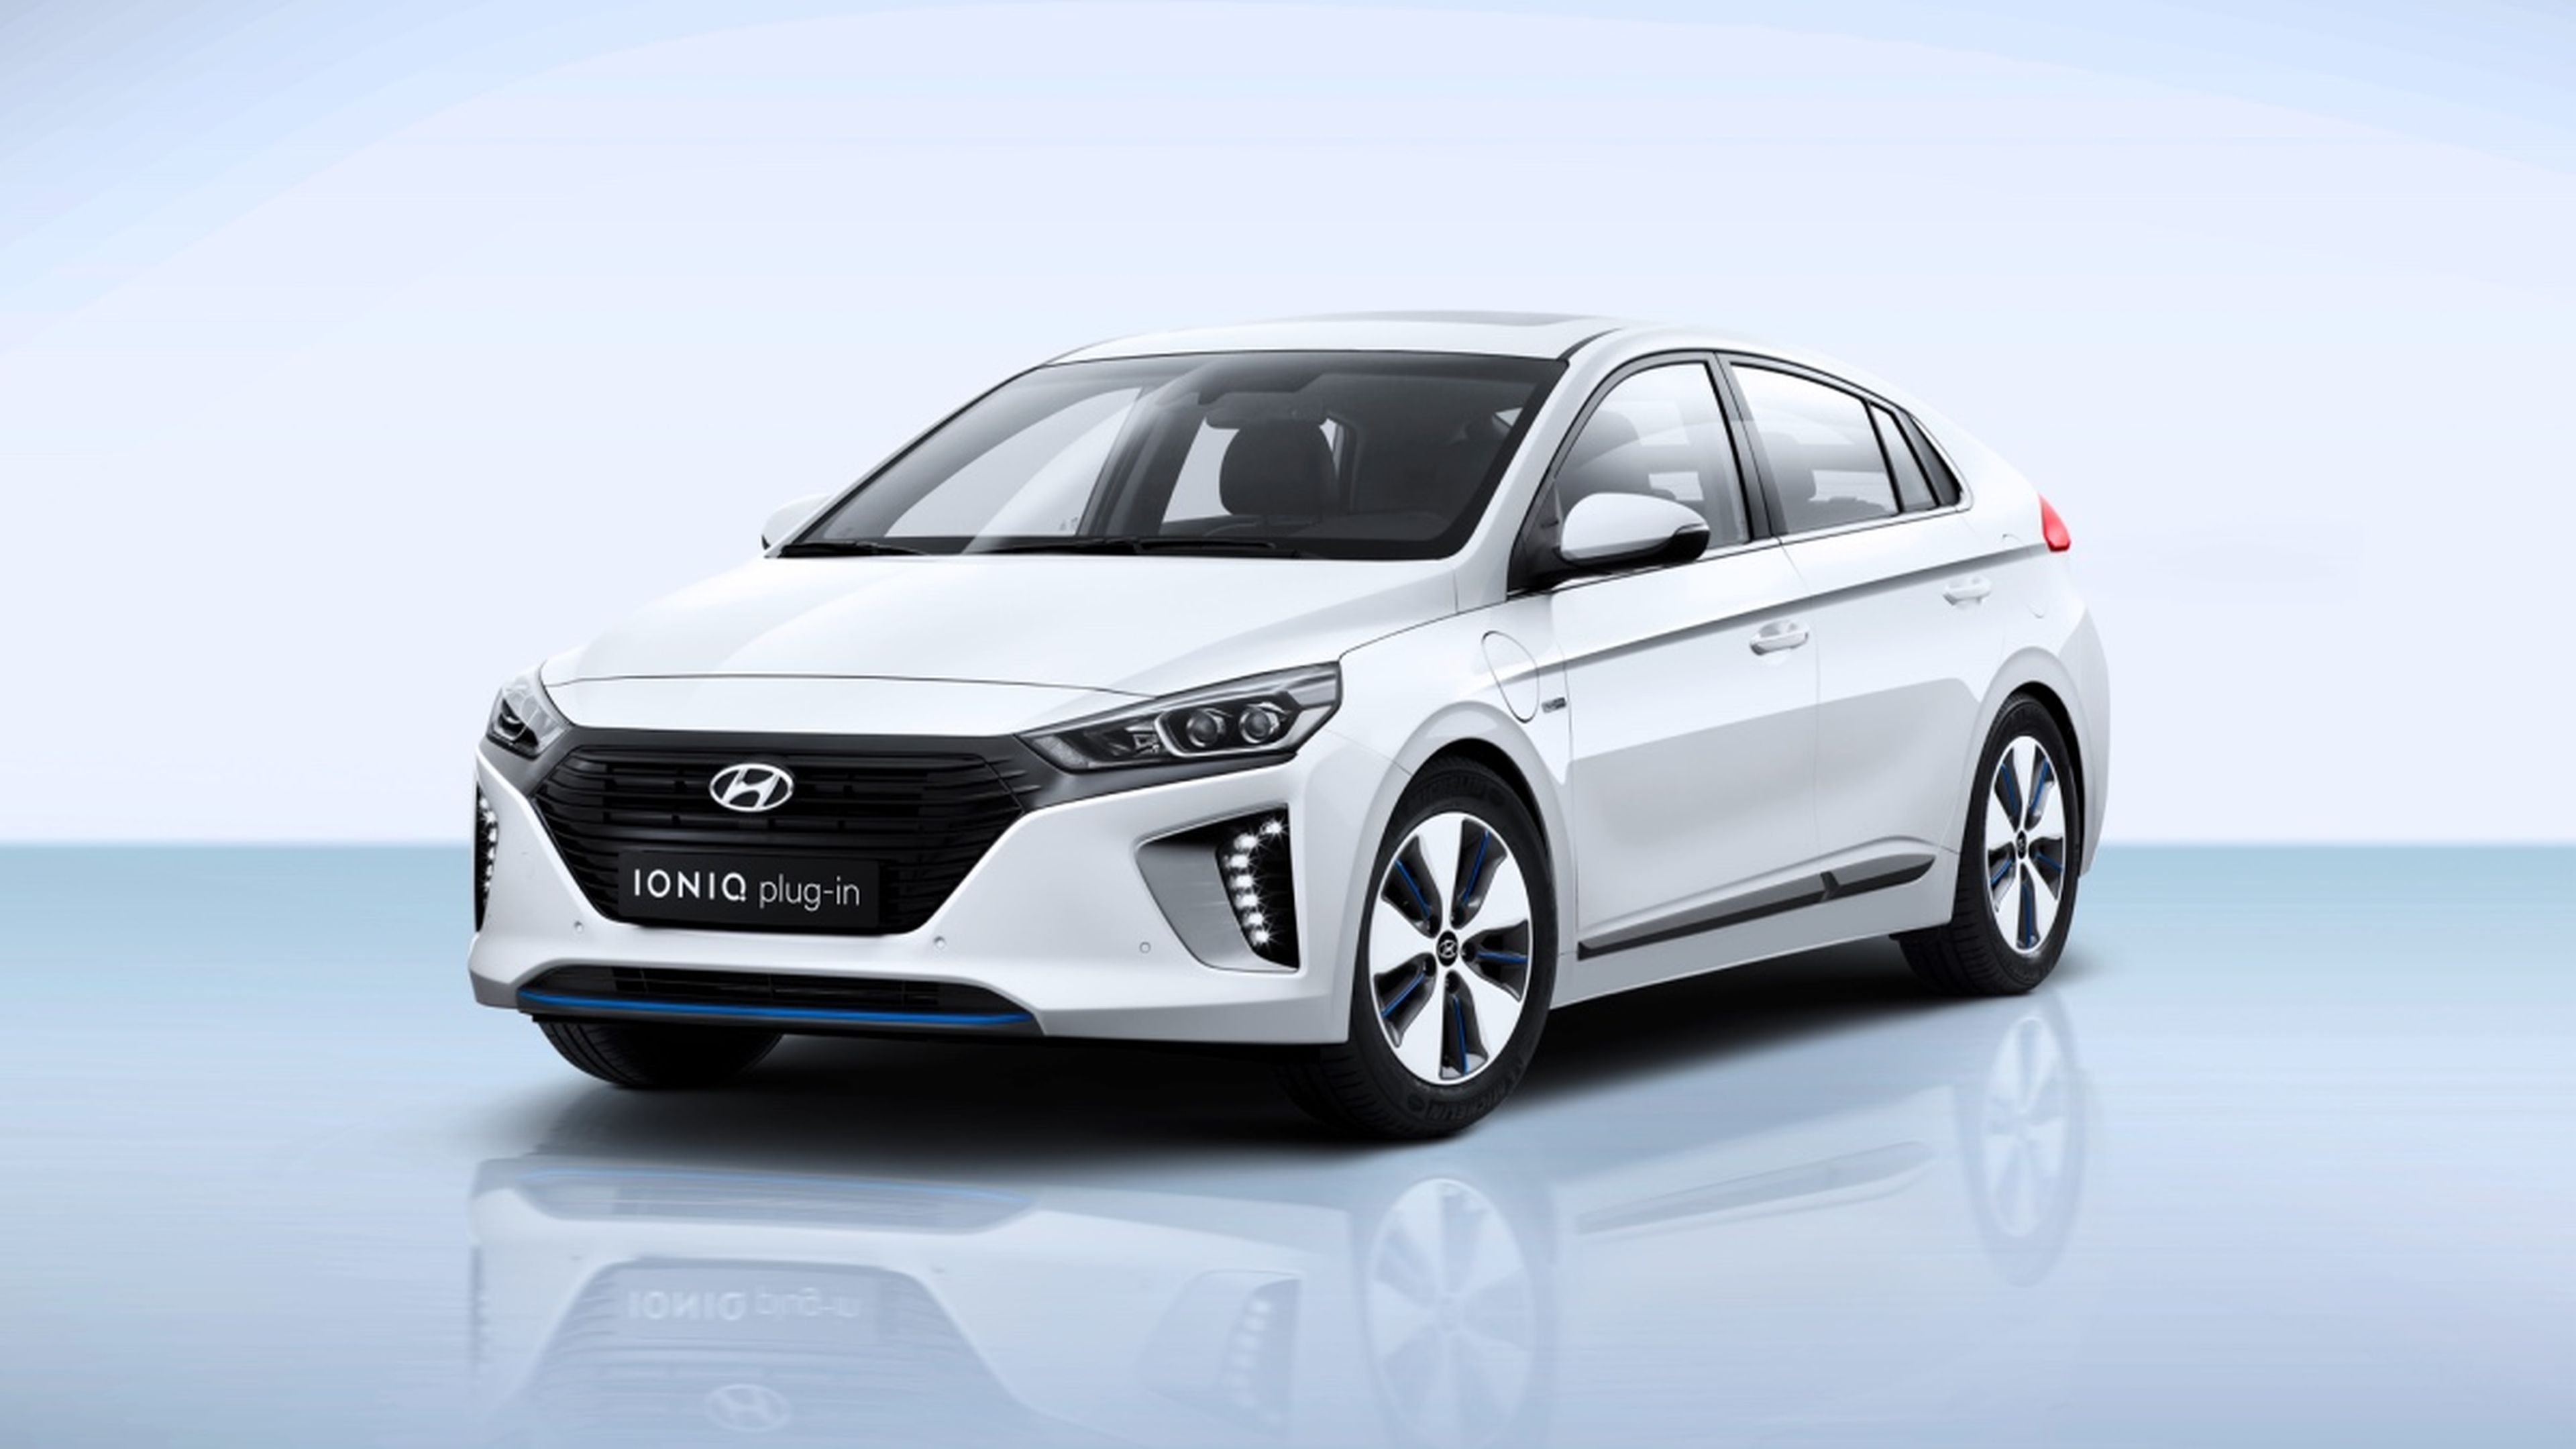 Hyundai Ioniq plug-in frontal lateral